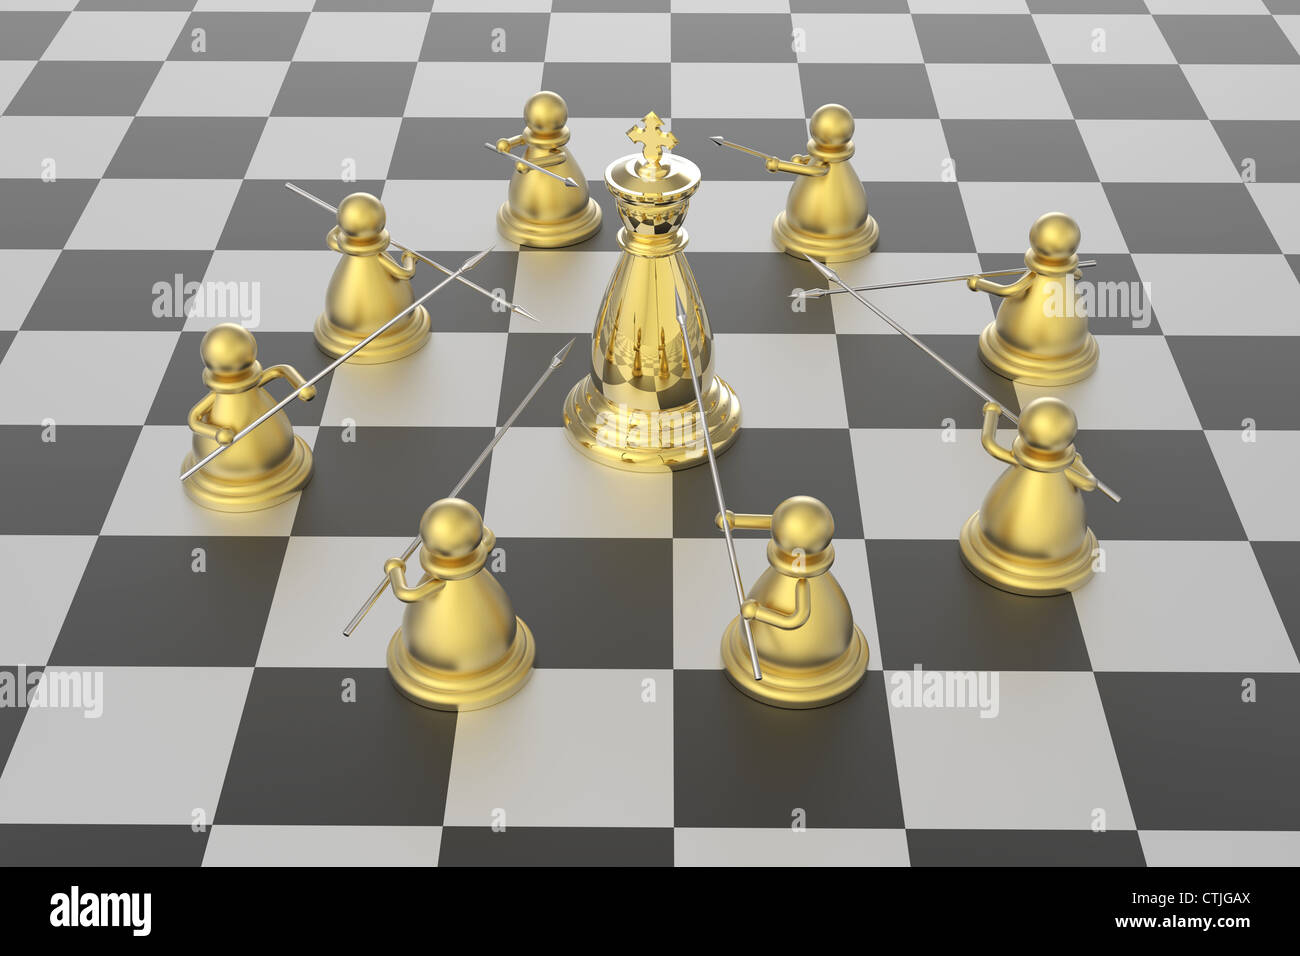 Dans la compétition d'échecs Échec et mat Banque D'Images